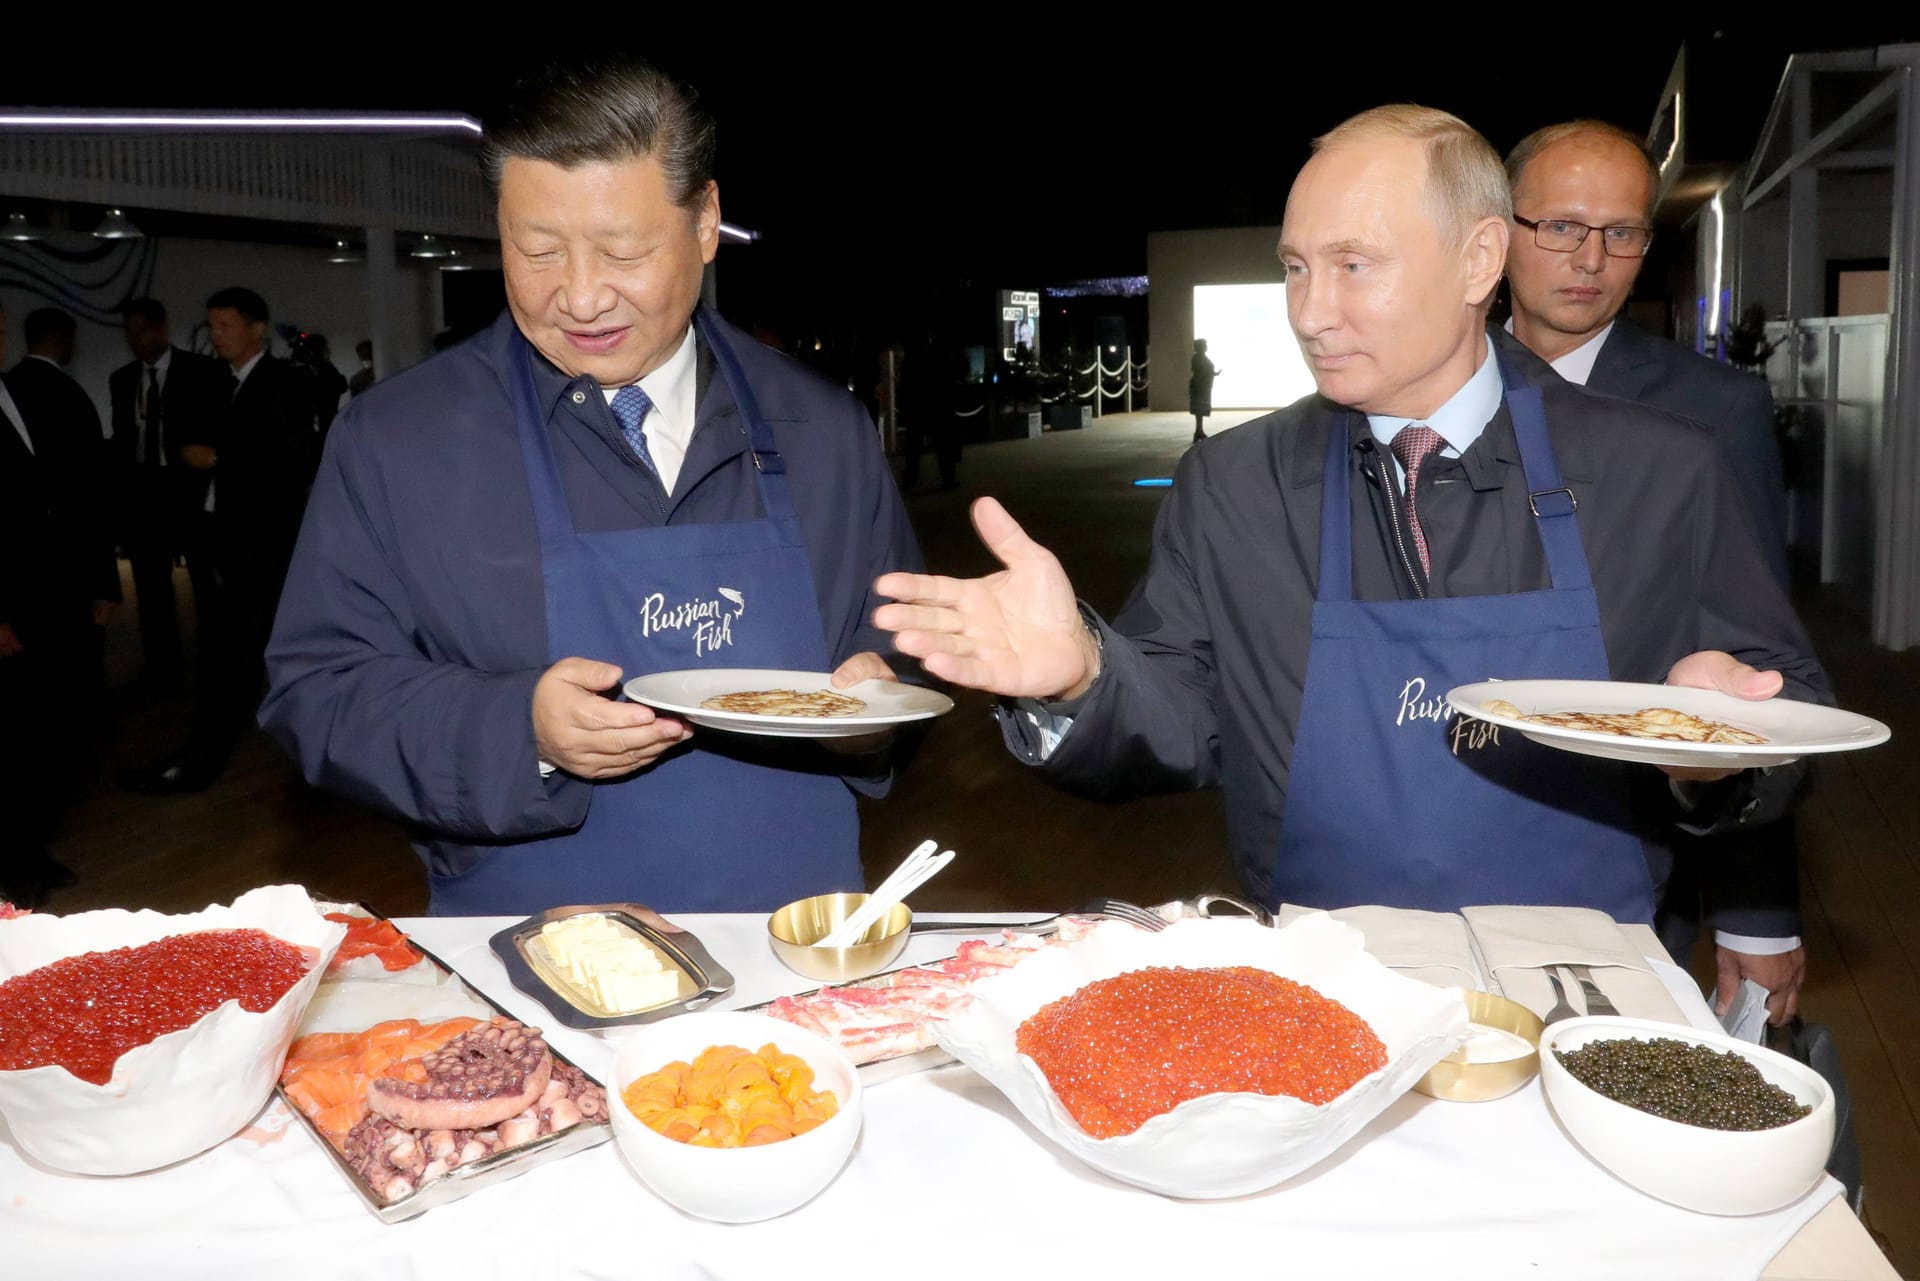 Auch das Essen verbindet sie. Beim Östlichen Wirtschaftszentrum im Jahr 2018 lassen sich Xi und Putin russische Pfannkuchen schmecken.